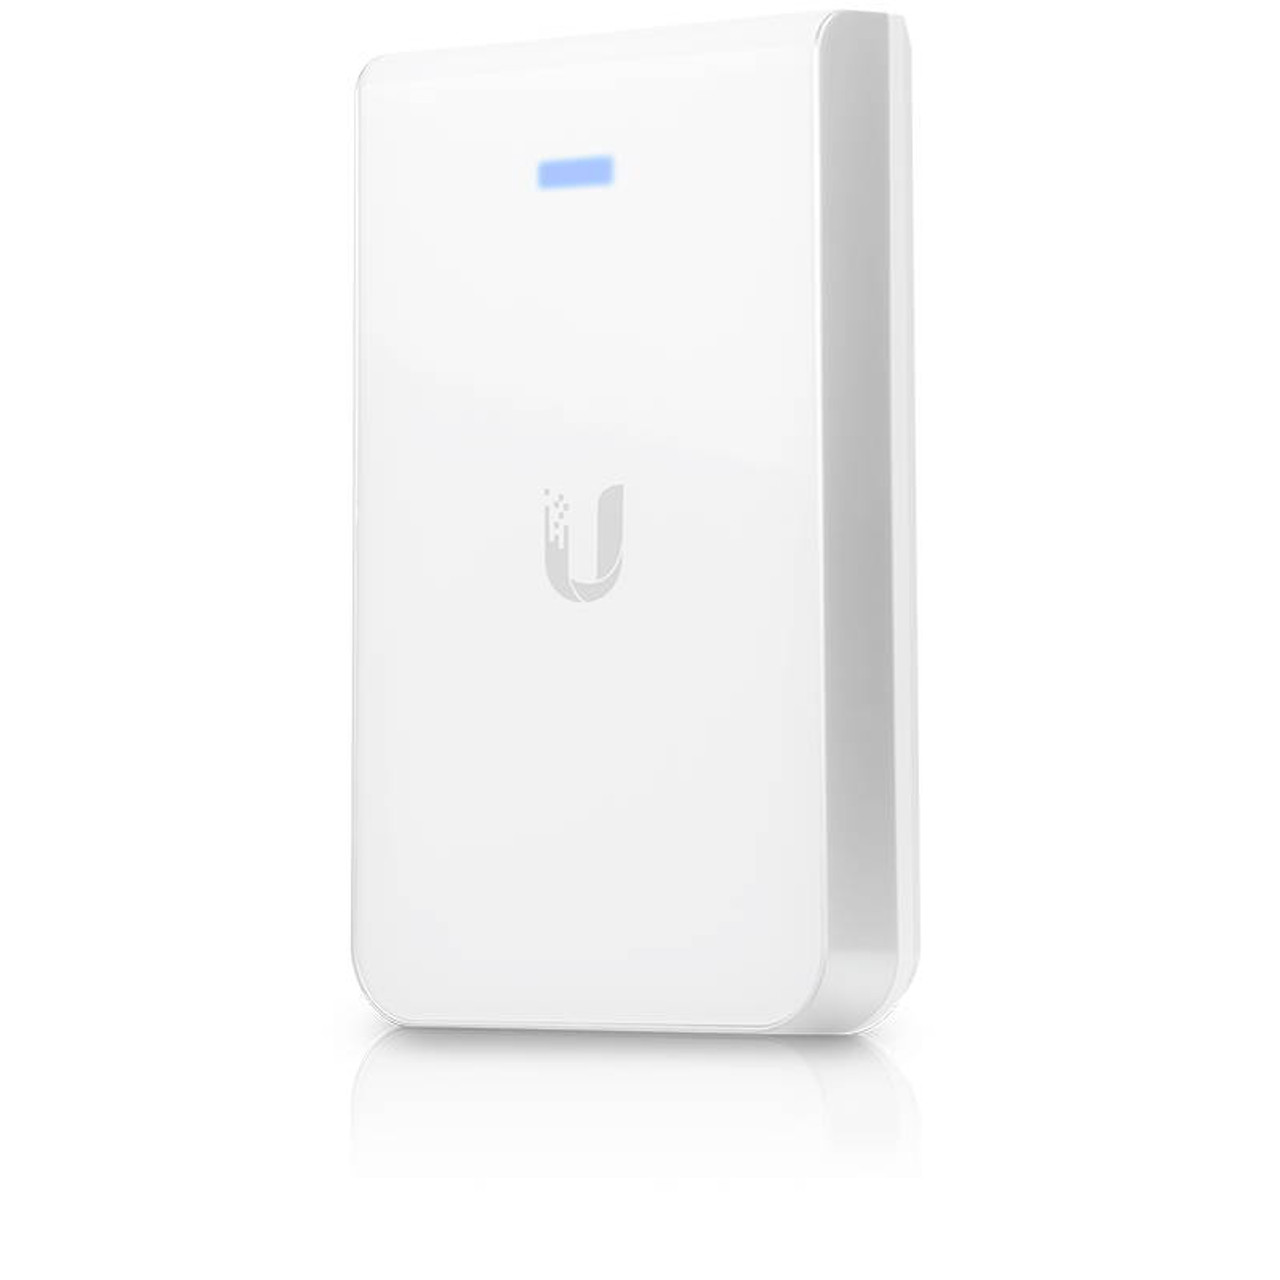 Ubiquiti UAP-AC-IW-US In-Wall 802.11ac Wi-Fi Access